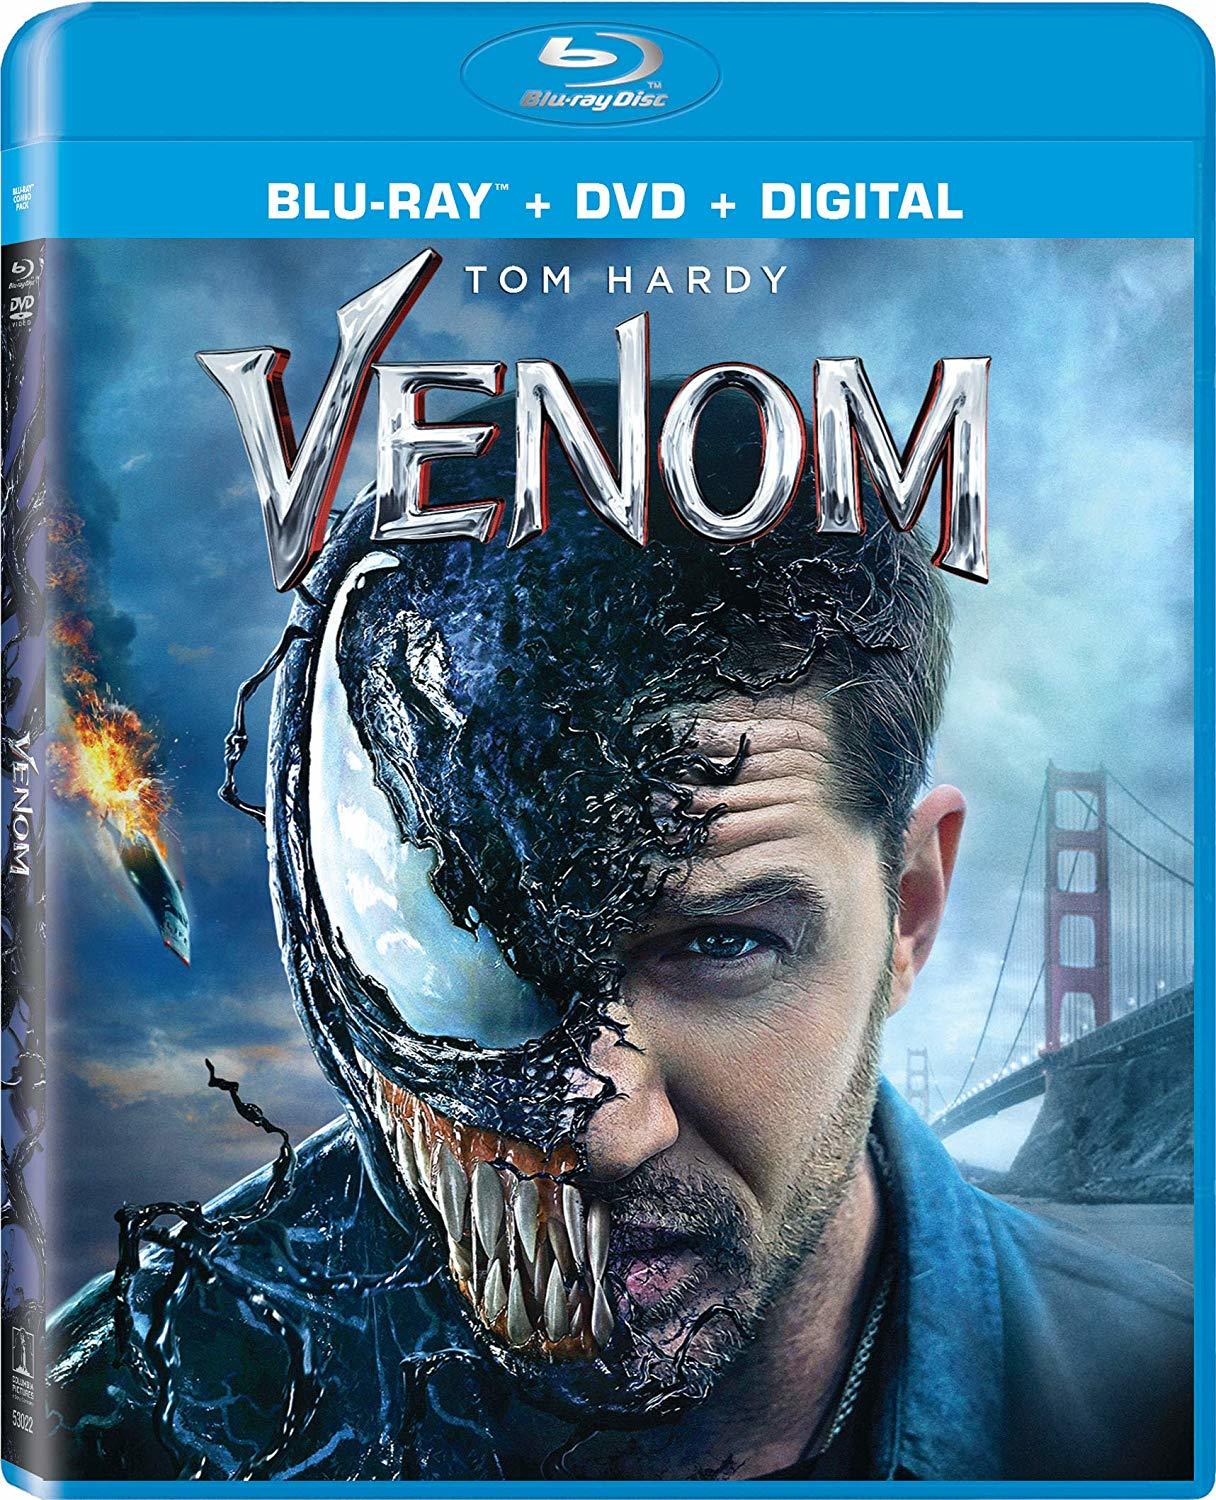 [毒液].Venom.2018.UHD.BluRay.2160p.HEVC.TrueHD.7.1-BeyondHD     54.34G-2.jpg